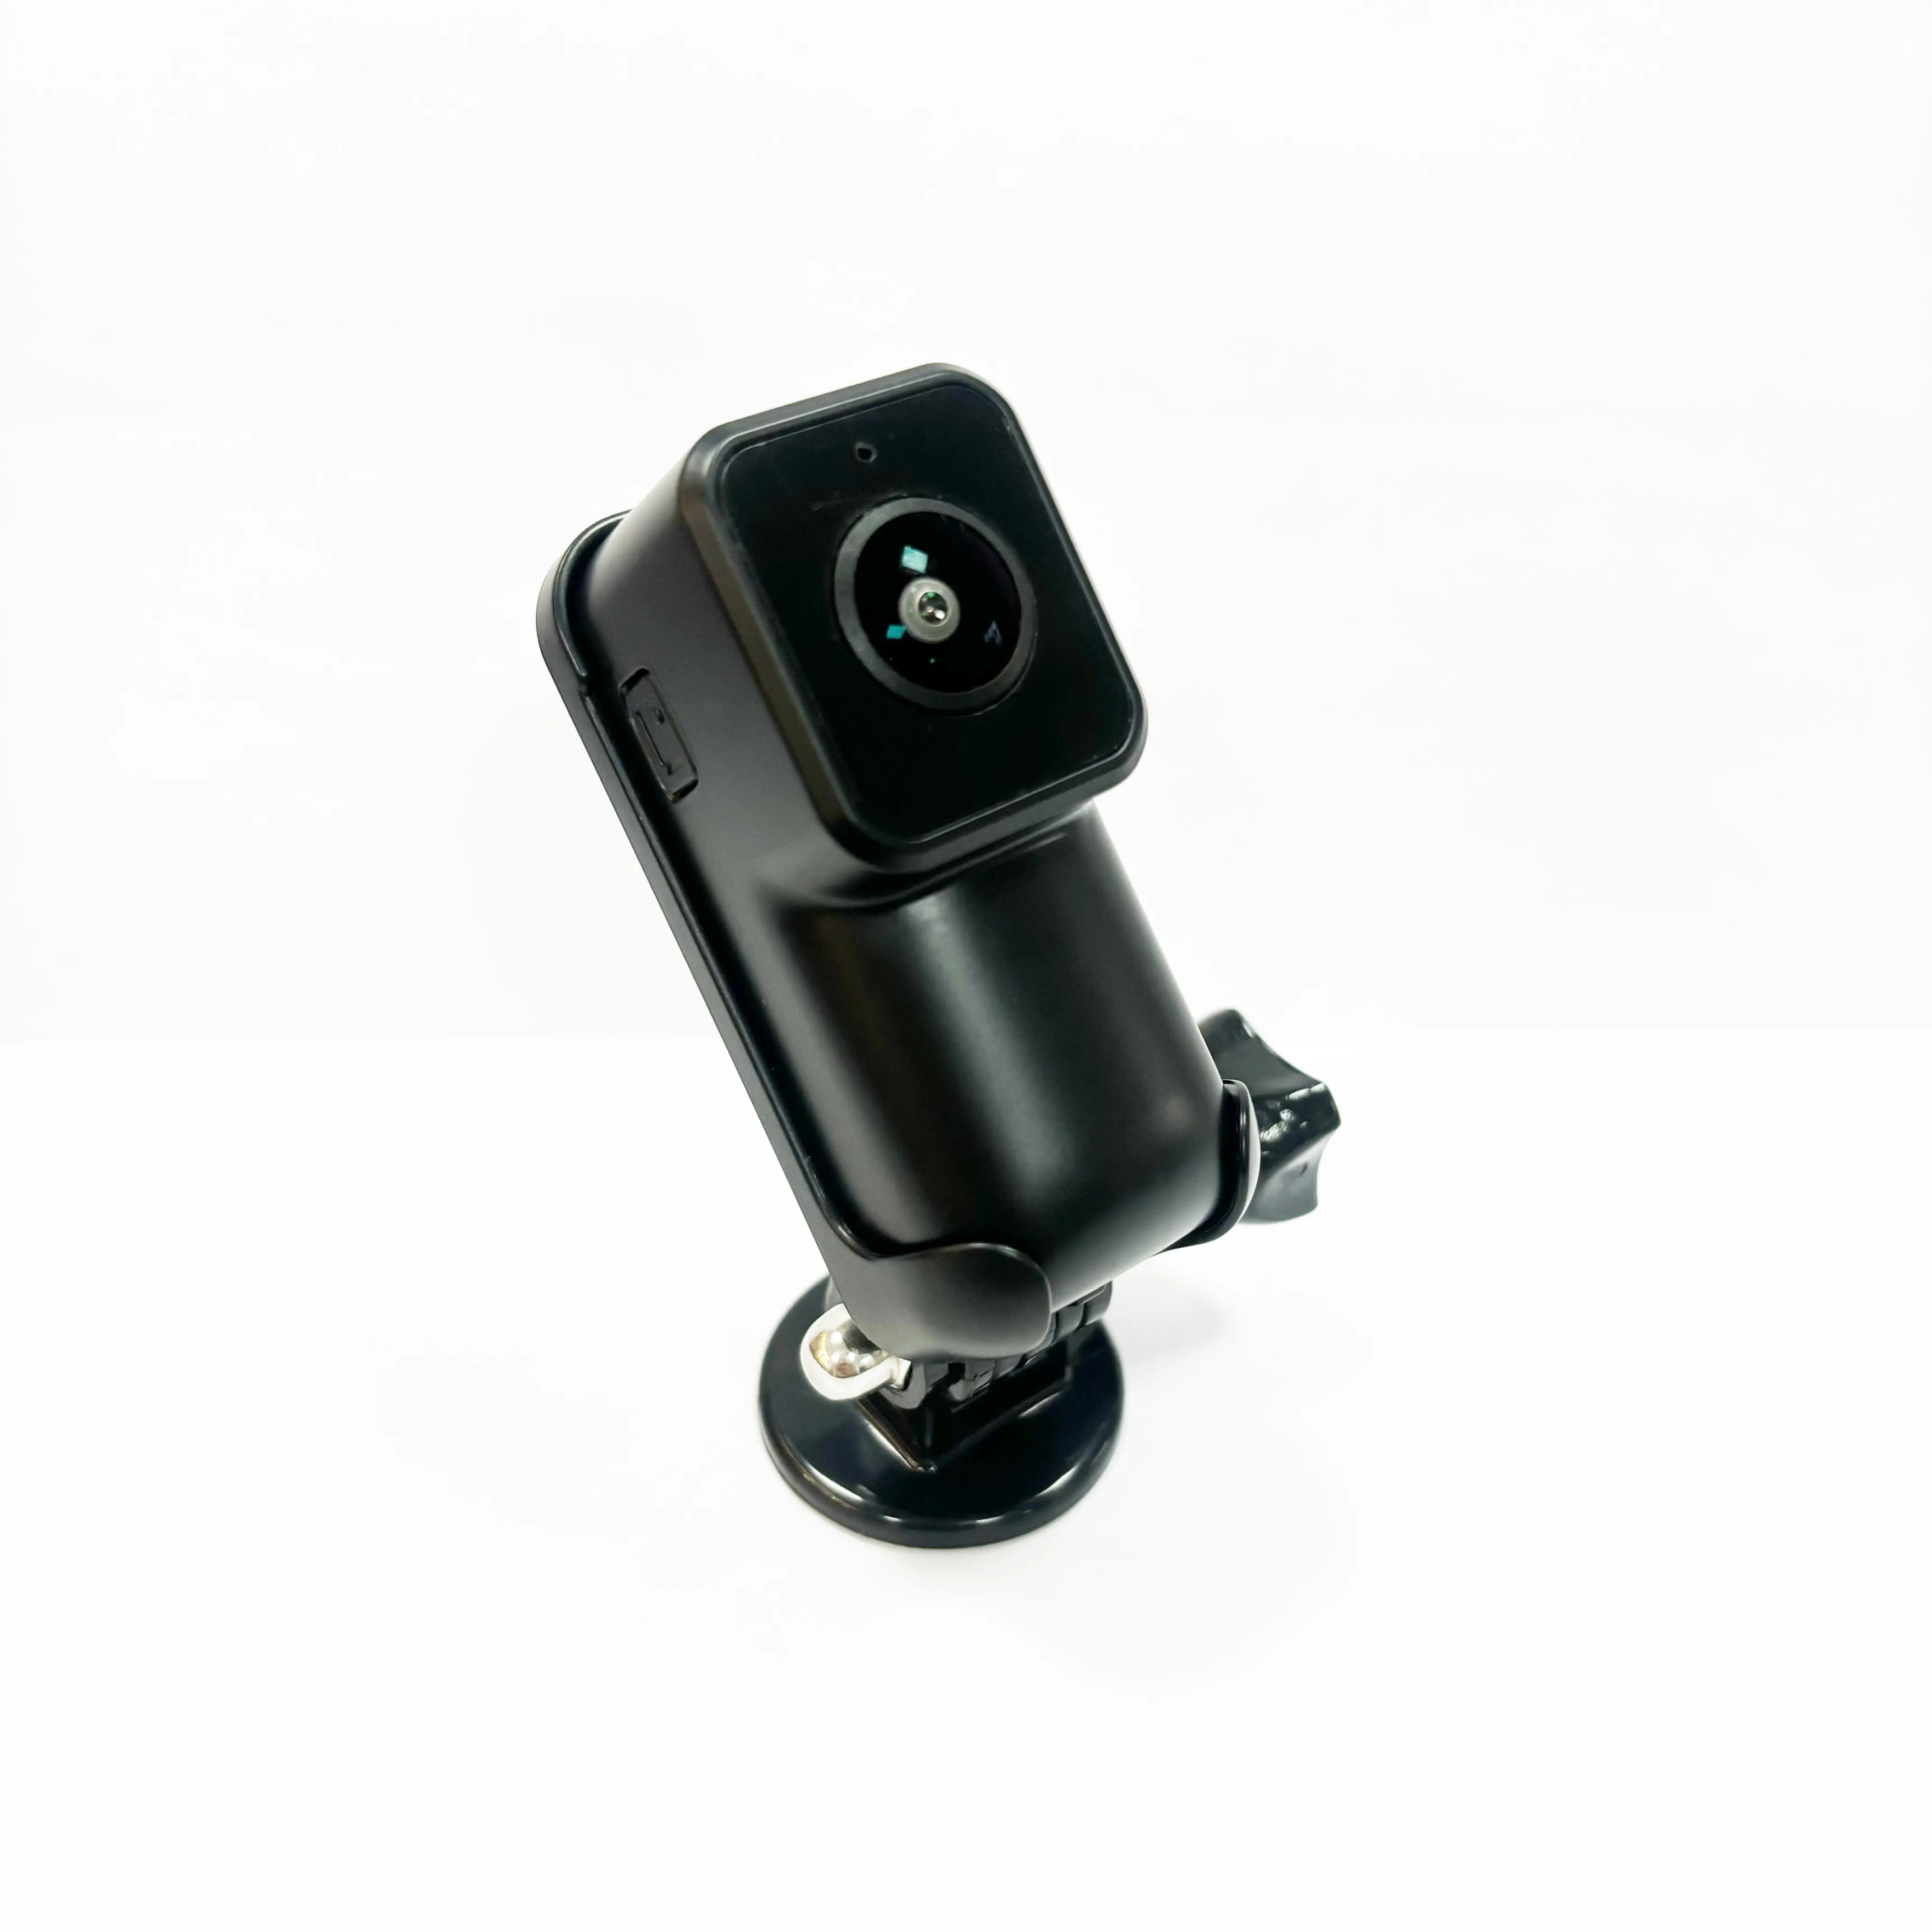 Sport Action Sicherheit Super Weitwinkel Digital kamera 1080P Video Voice Recorder Günstiger Preis mit Hotspot WiFi Feekass Kamera